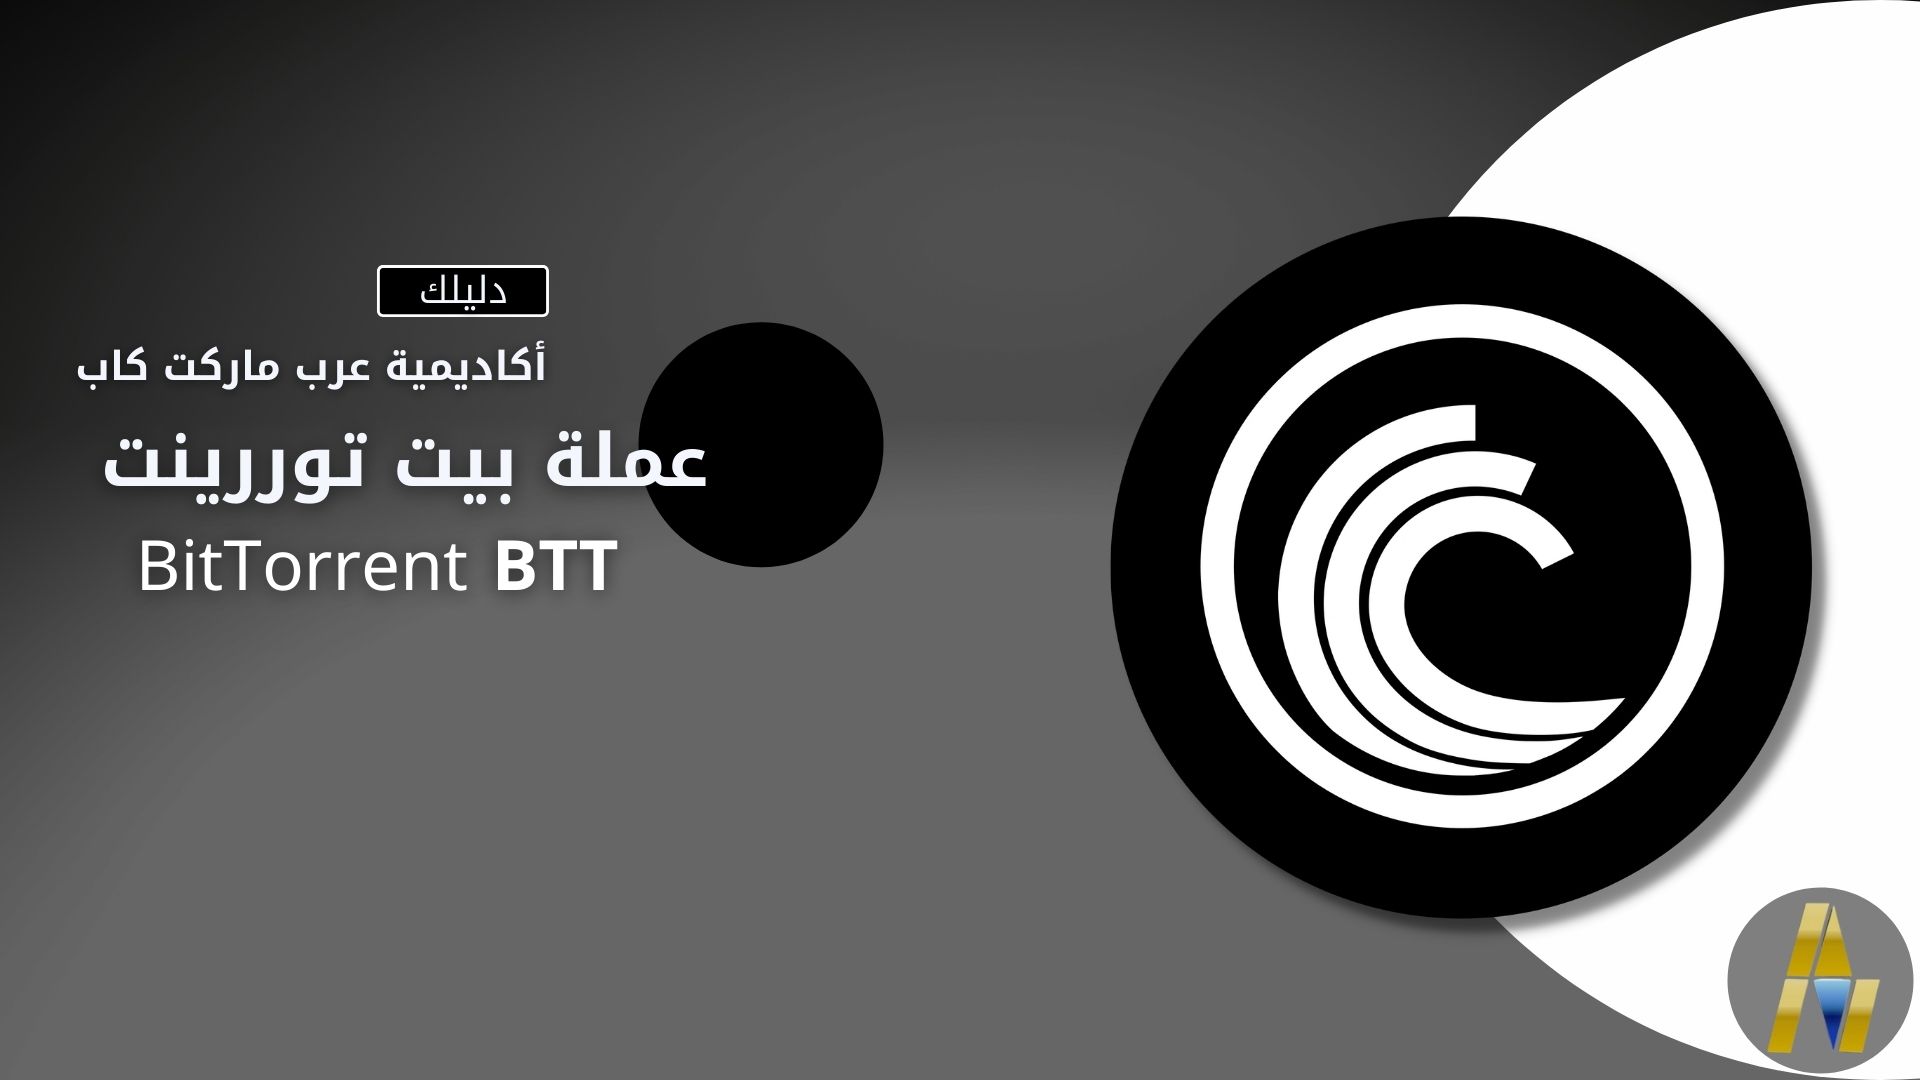 بيت توررينت BitTorrent | BTT